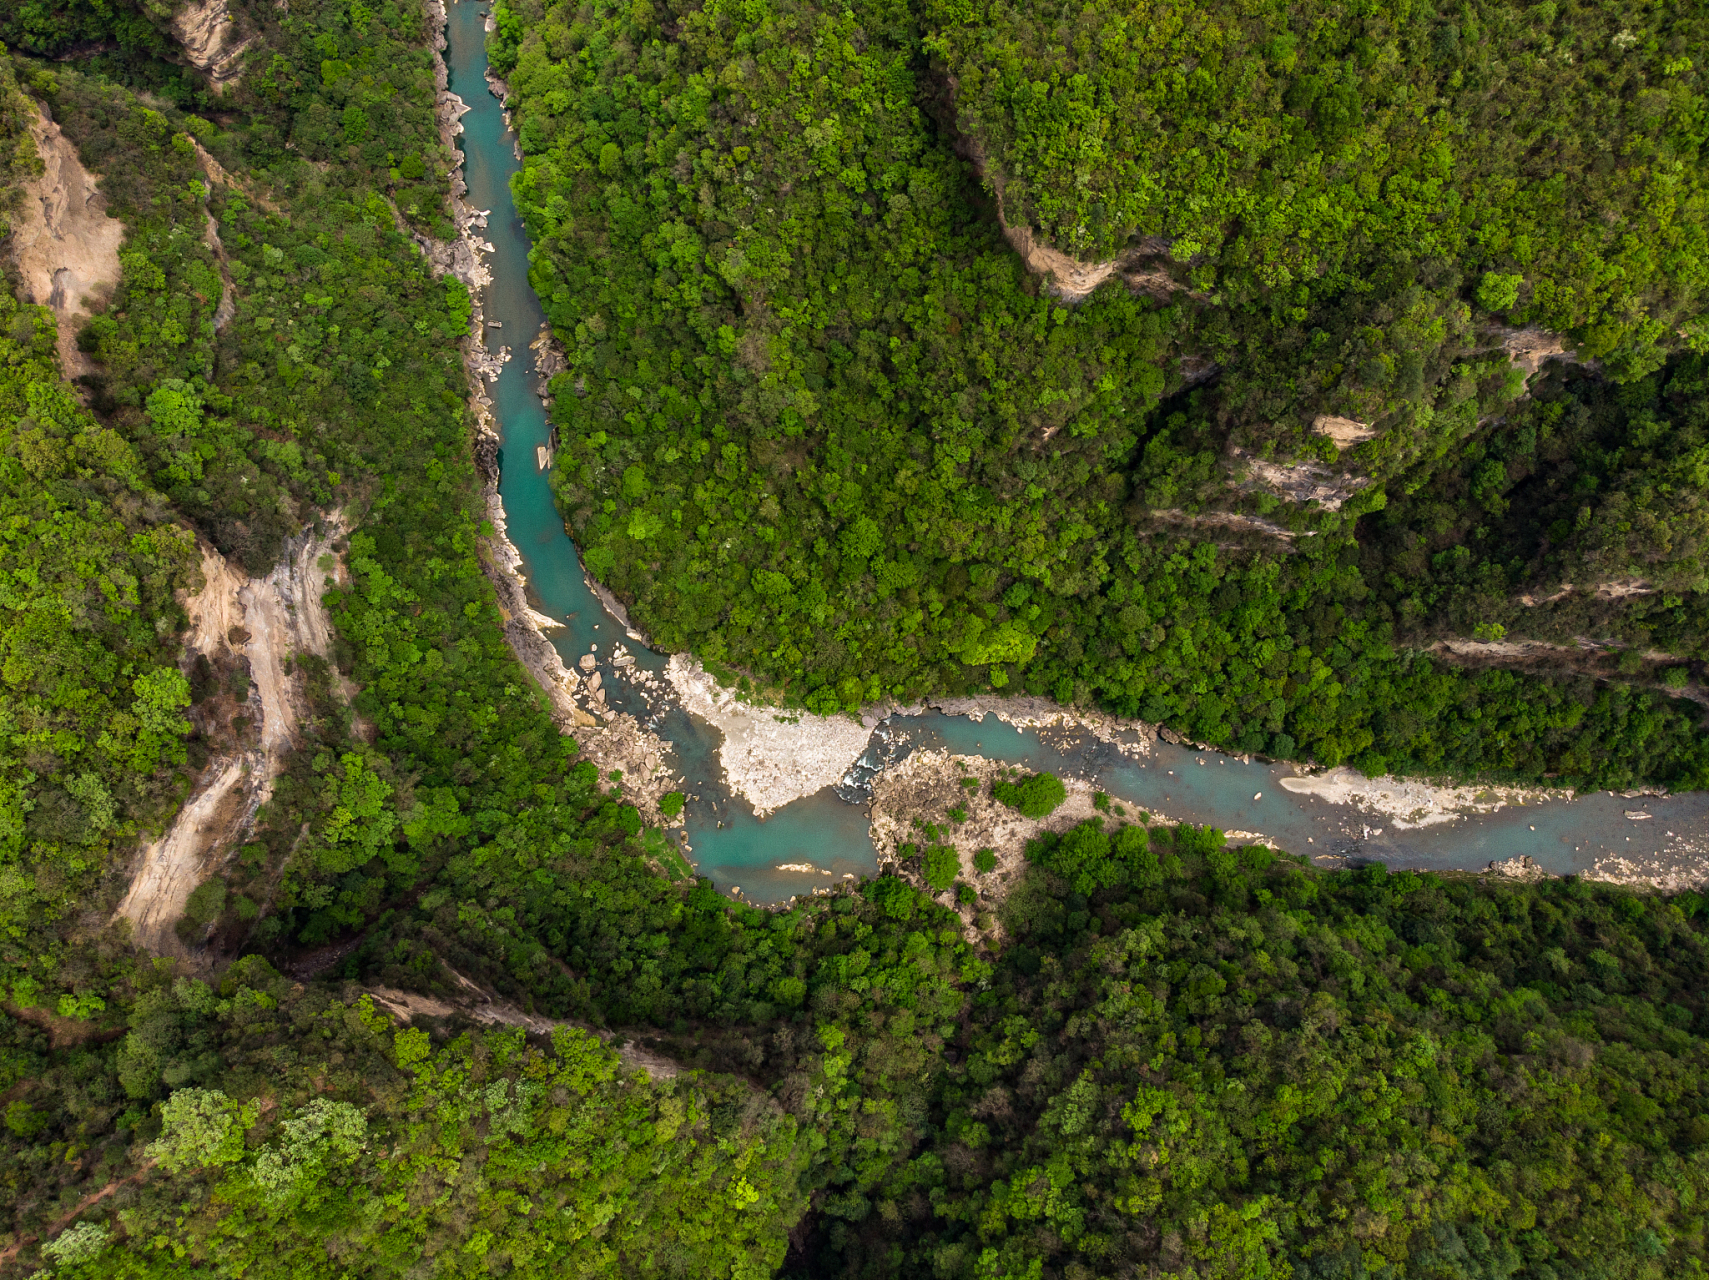 米仓山大峡谷,位于四川省南充市仪陇县境内,是一处以峡谷为主的自然